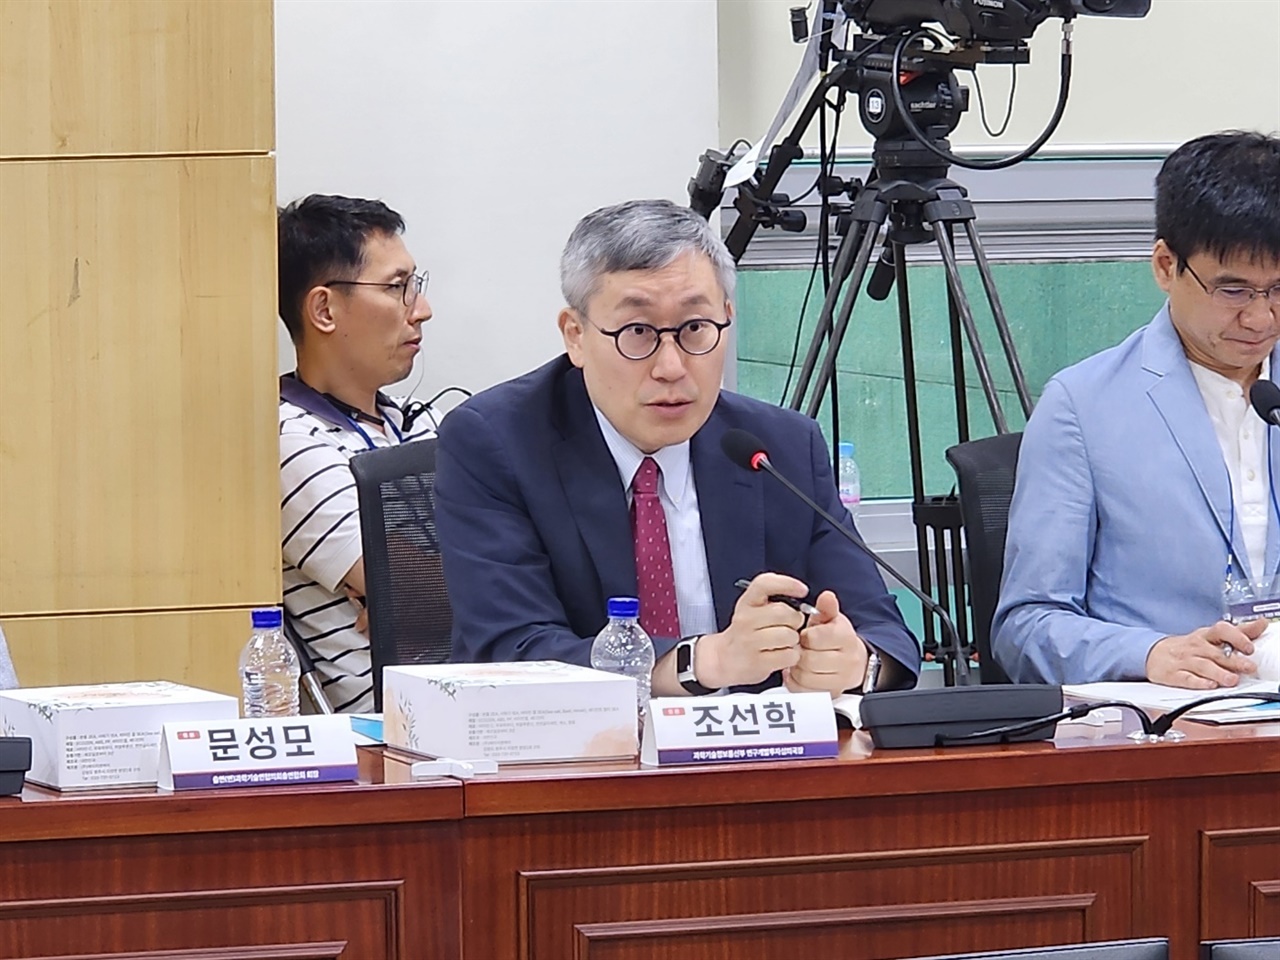  국회의원회관에서 열린 정책토론회에서 조선학 과학기술정보통신부 국장이 발표를 하고 있다.